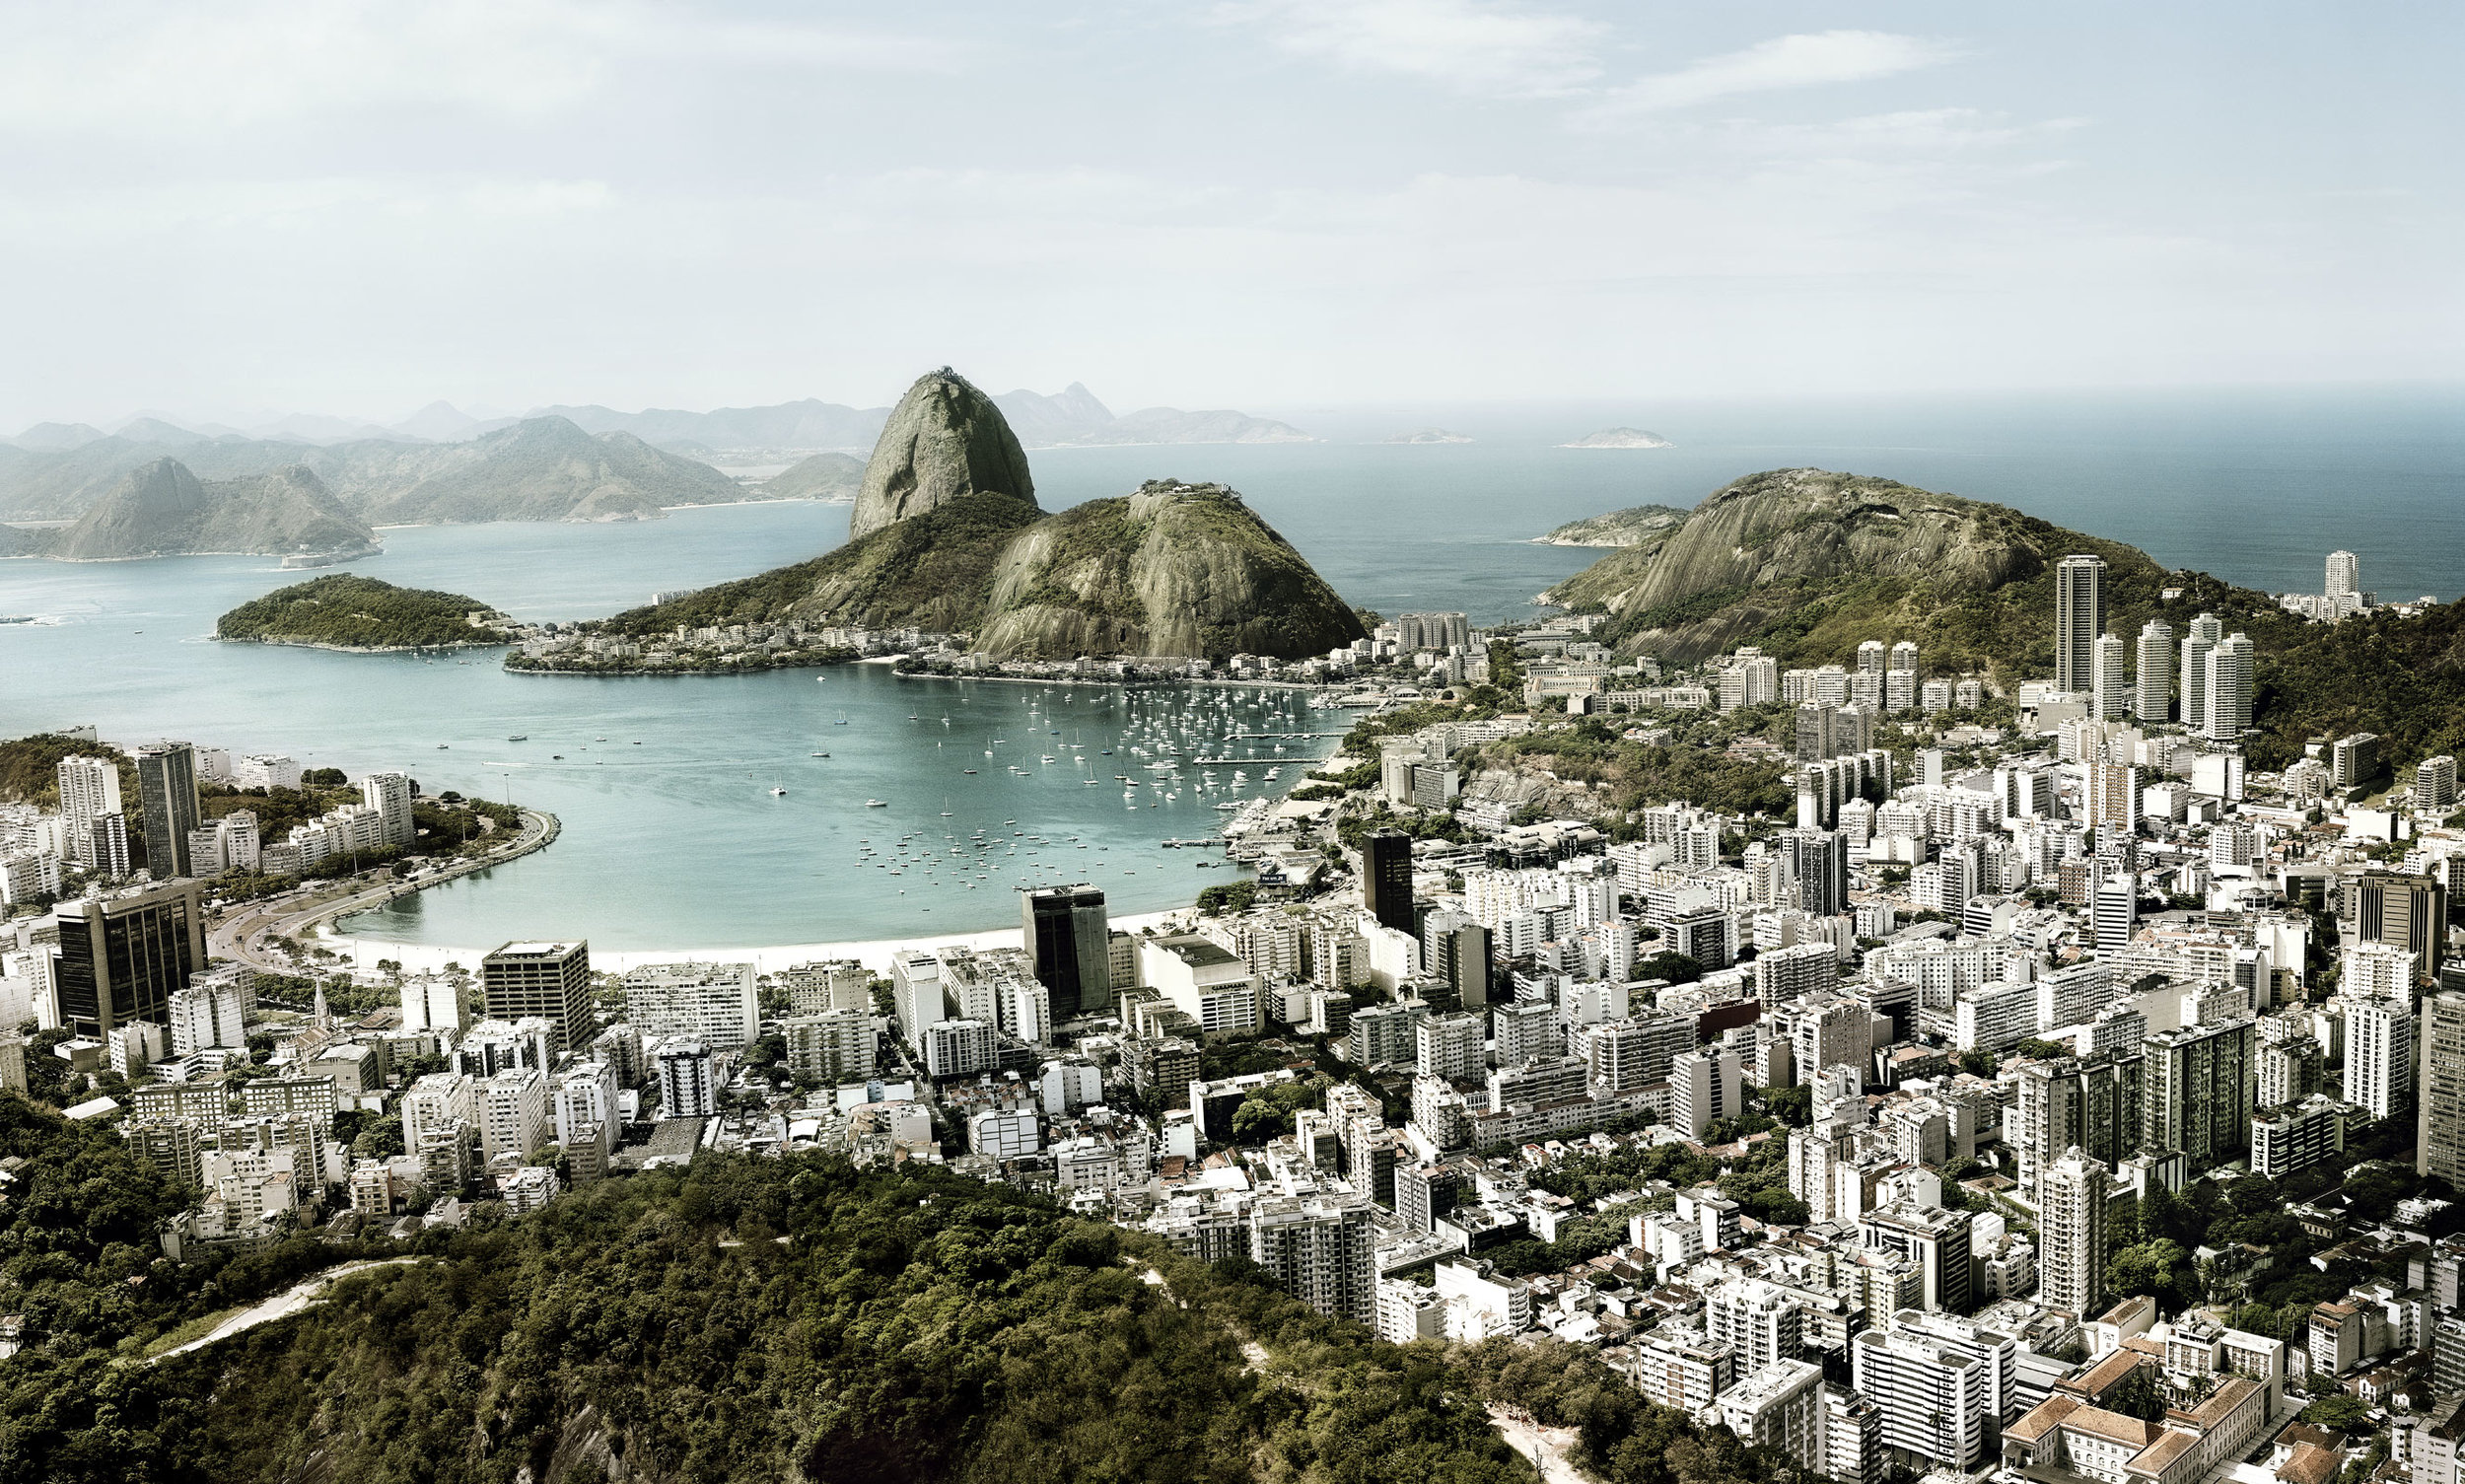  Rio de Janeiro, Brazil   Find Flights  